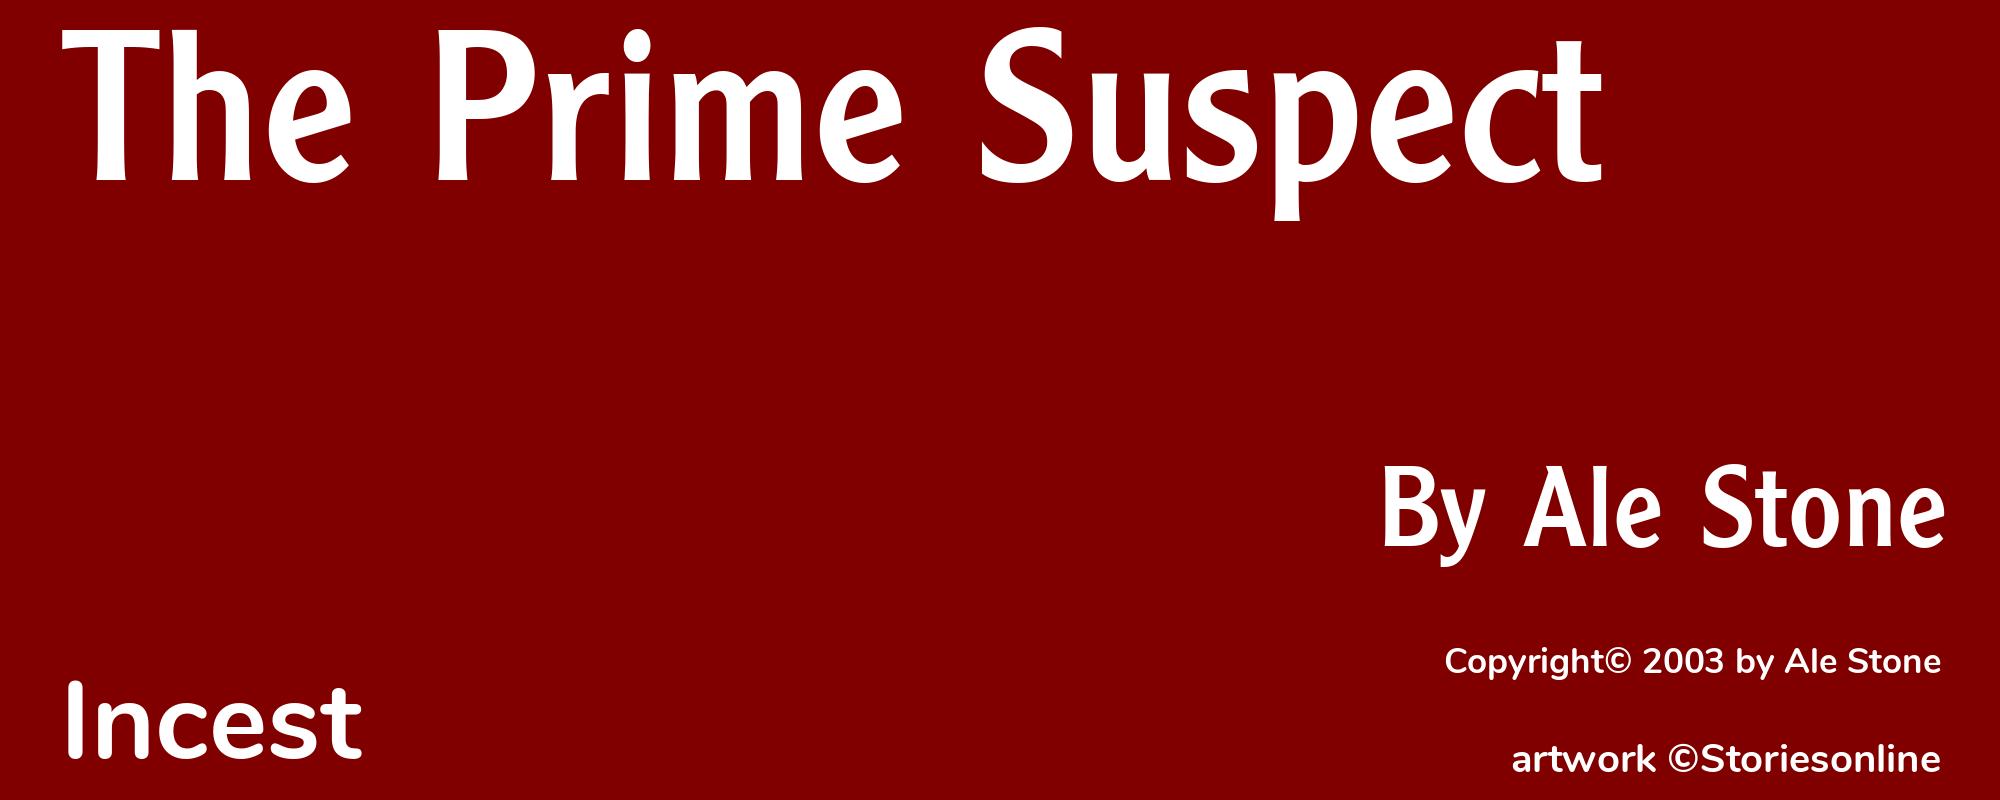 The Prime Suspect - Cover